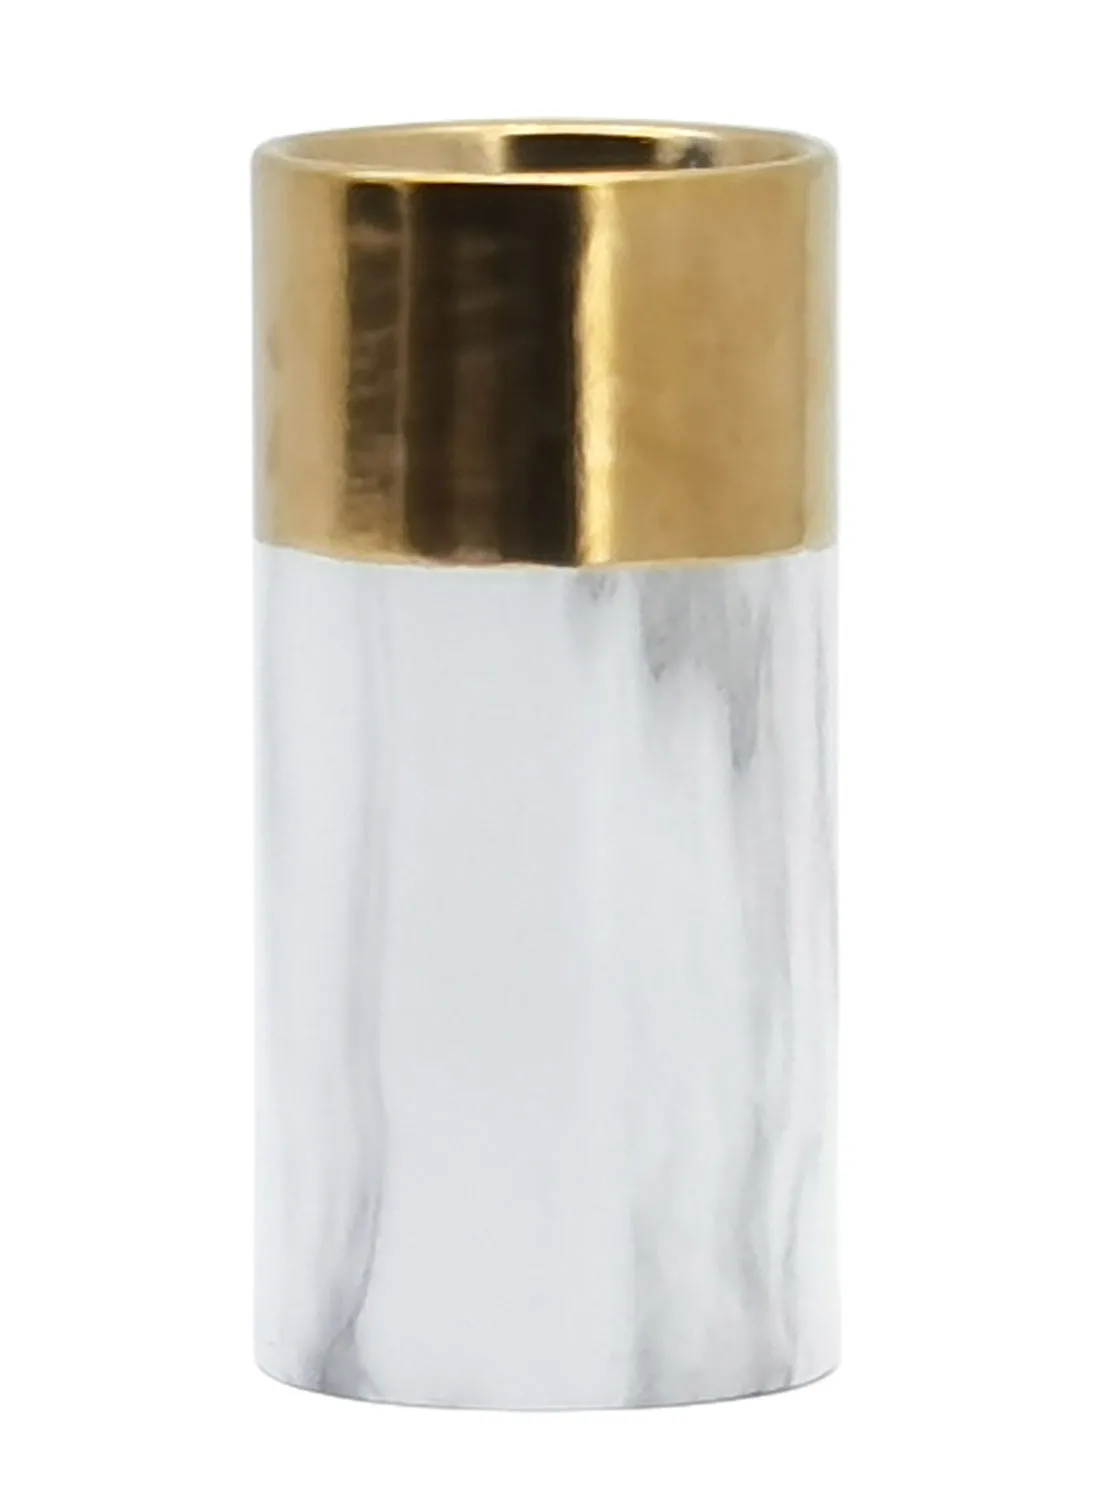 إيب آند فلو تصميم رخامي مزهرية سيراميك فريدة من نوعها مواد ذات جودة فاخرة لمنزل أنيق مثالي N13-165 أبيض / ذهبي 10 × 20.5 سم